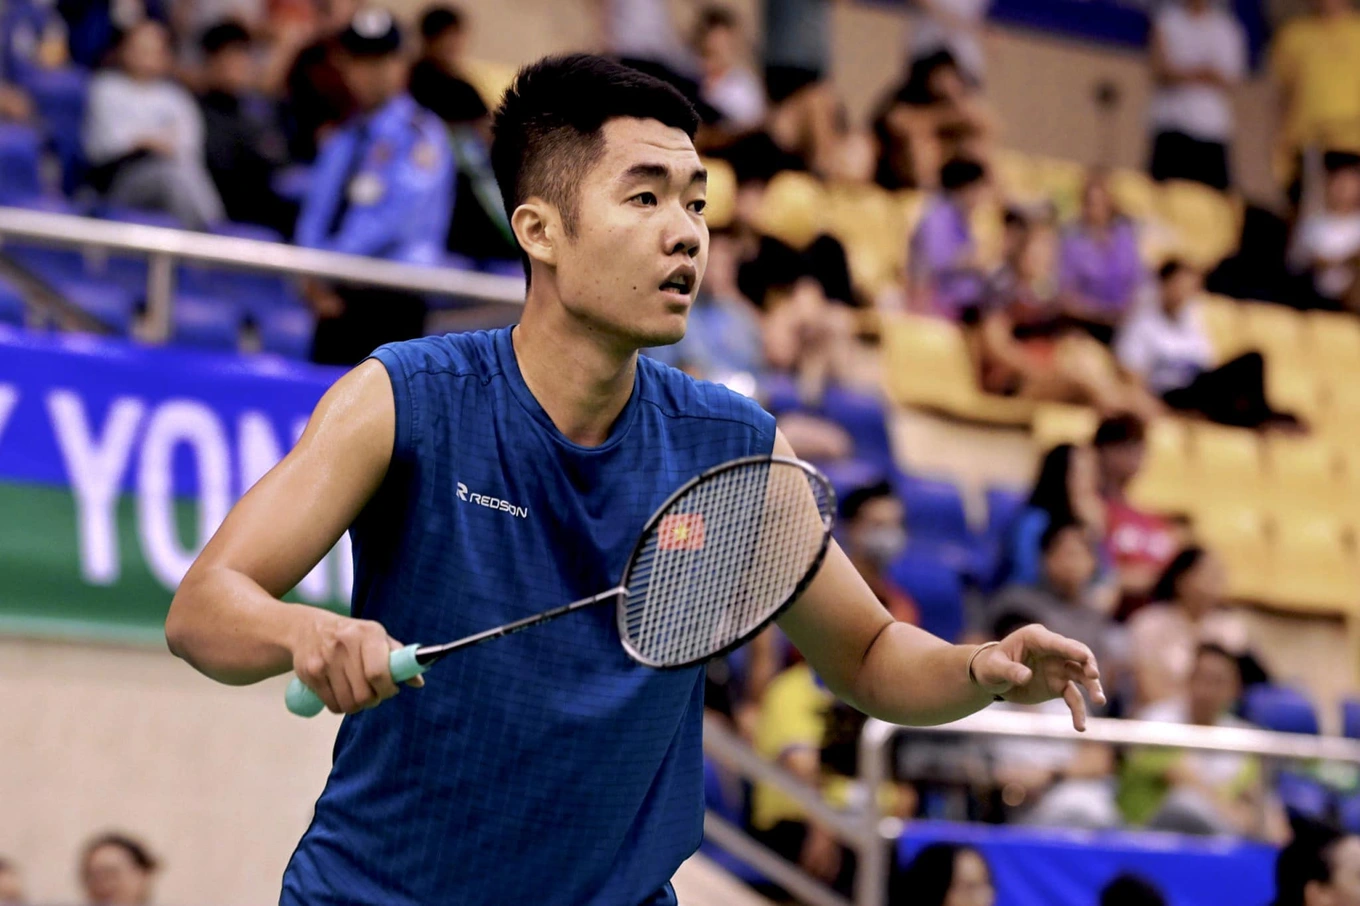 HLV Lee Young-jin được tiến cử dẫn dắt tuyển Việt Nam; Tay vợt cầu lông Việt Nam tiến gần đến tấm vé dự Olympic Paris 2024